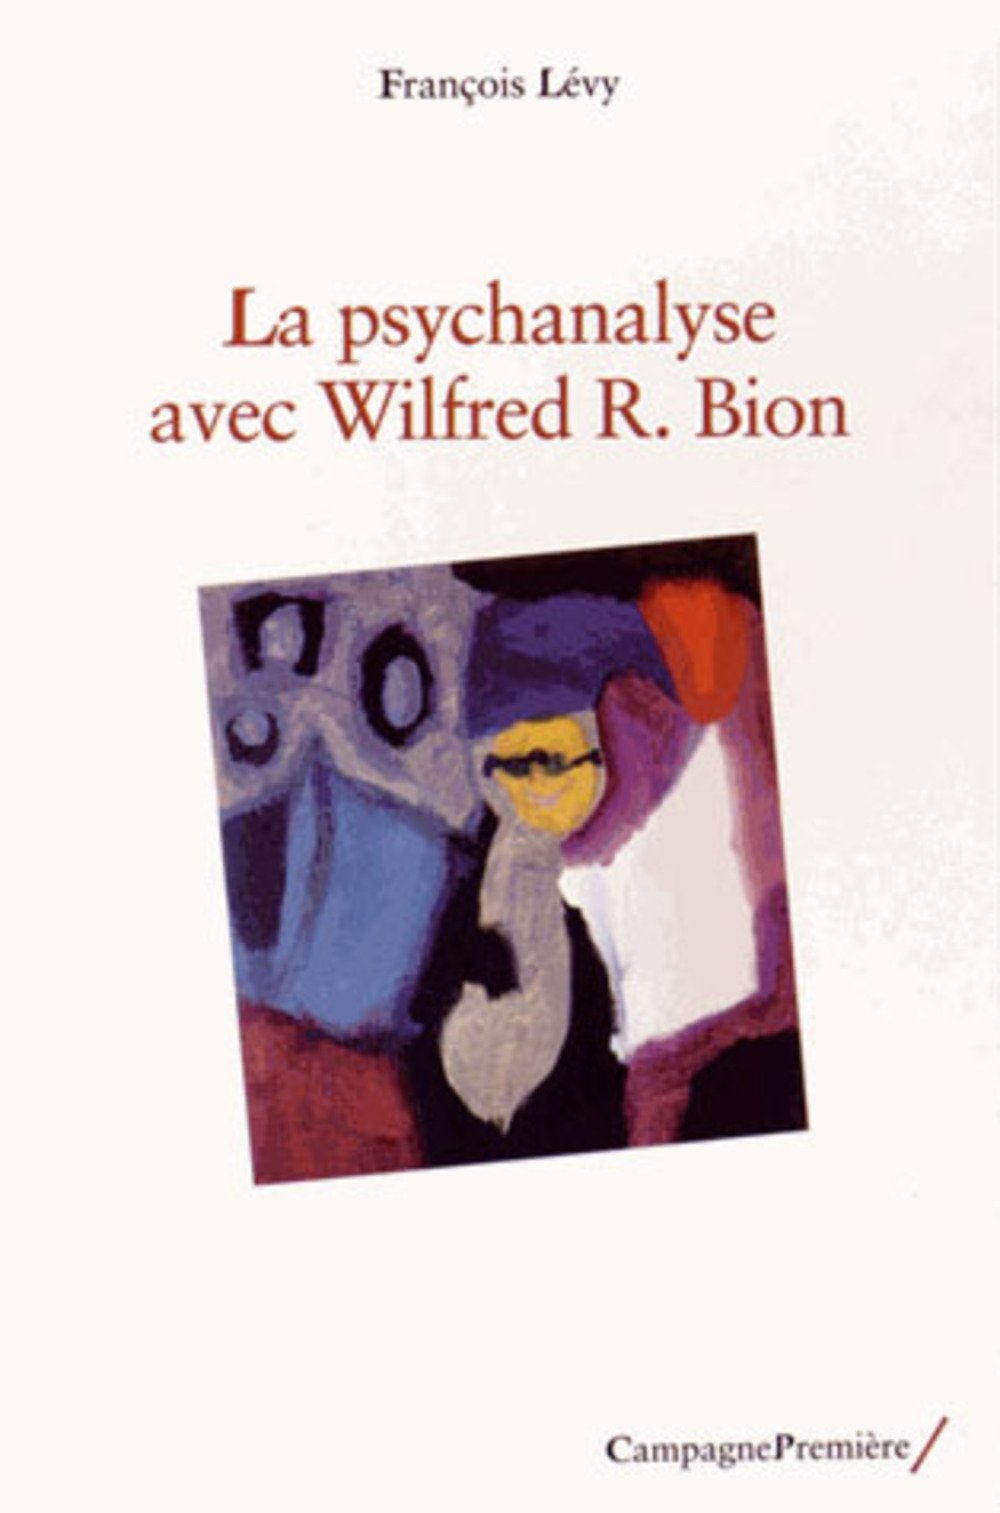 La psychanalise avec Wilfred Bion